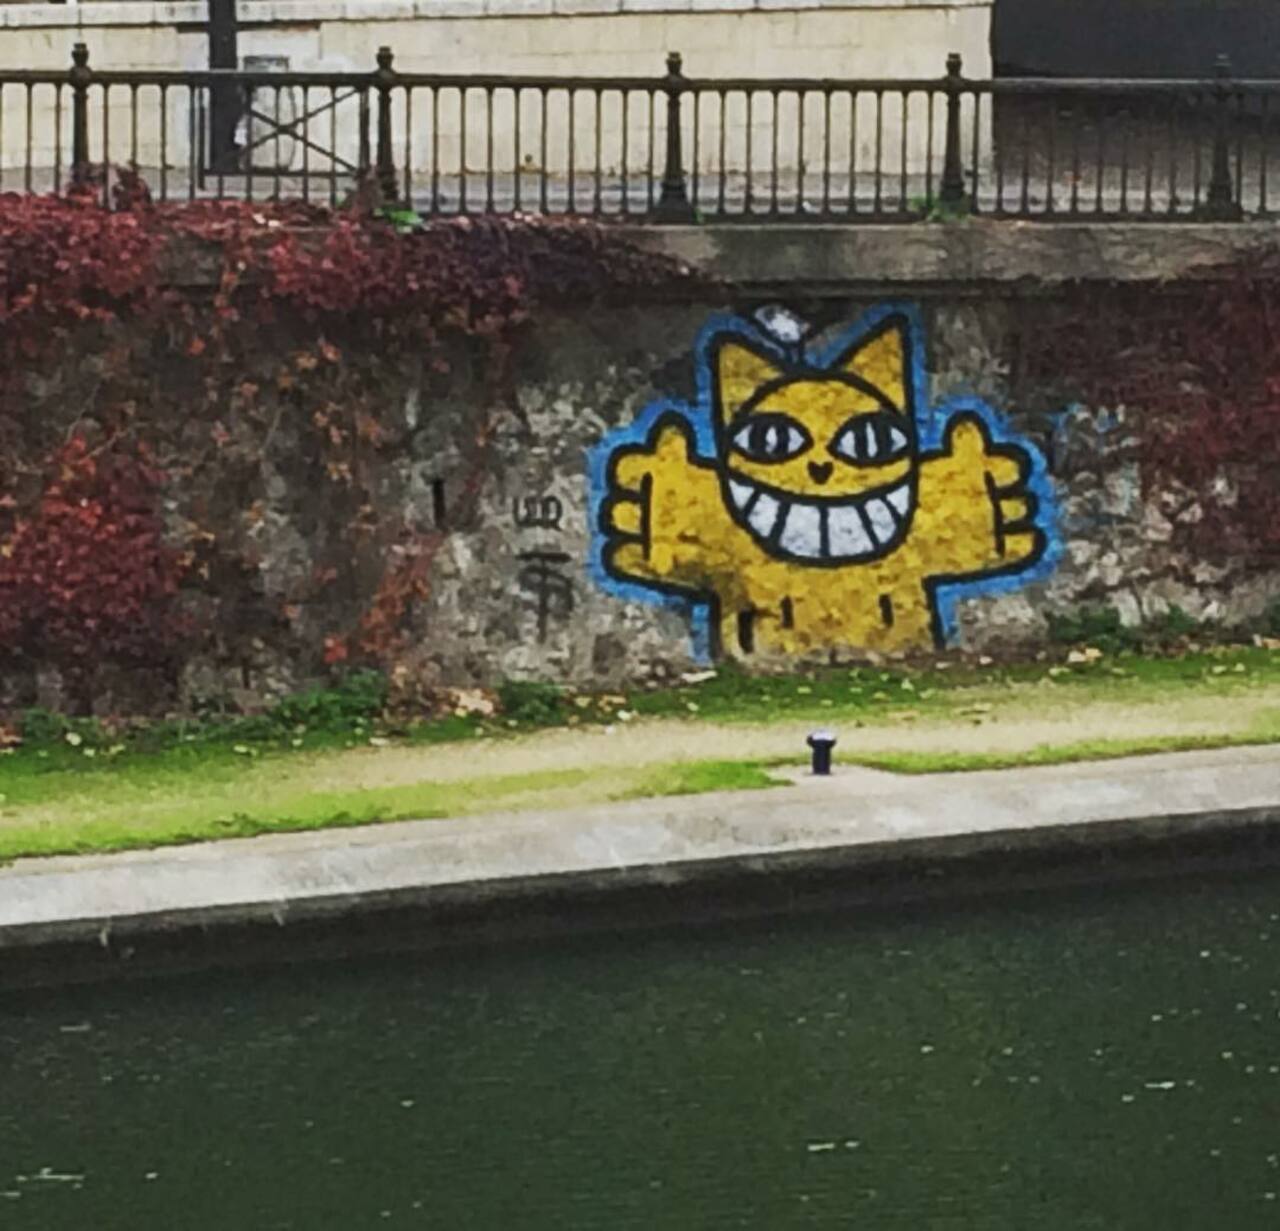 RT @circumjacent_fr: #Paris #graffiti photo by @allaboutparisandbeyond http://ift.tt/1OQVPSs #StreetArt https://t.co/Chr4hHSRNF